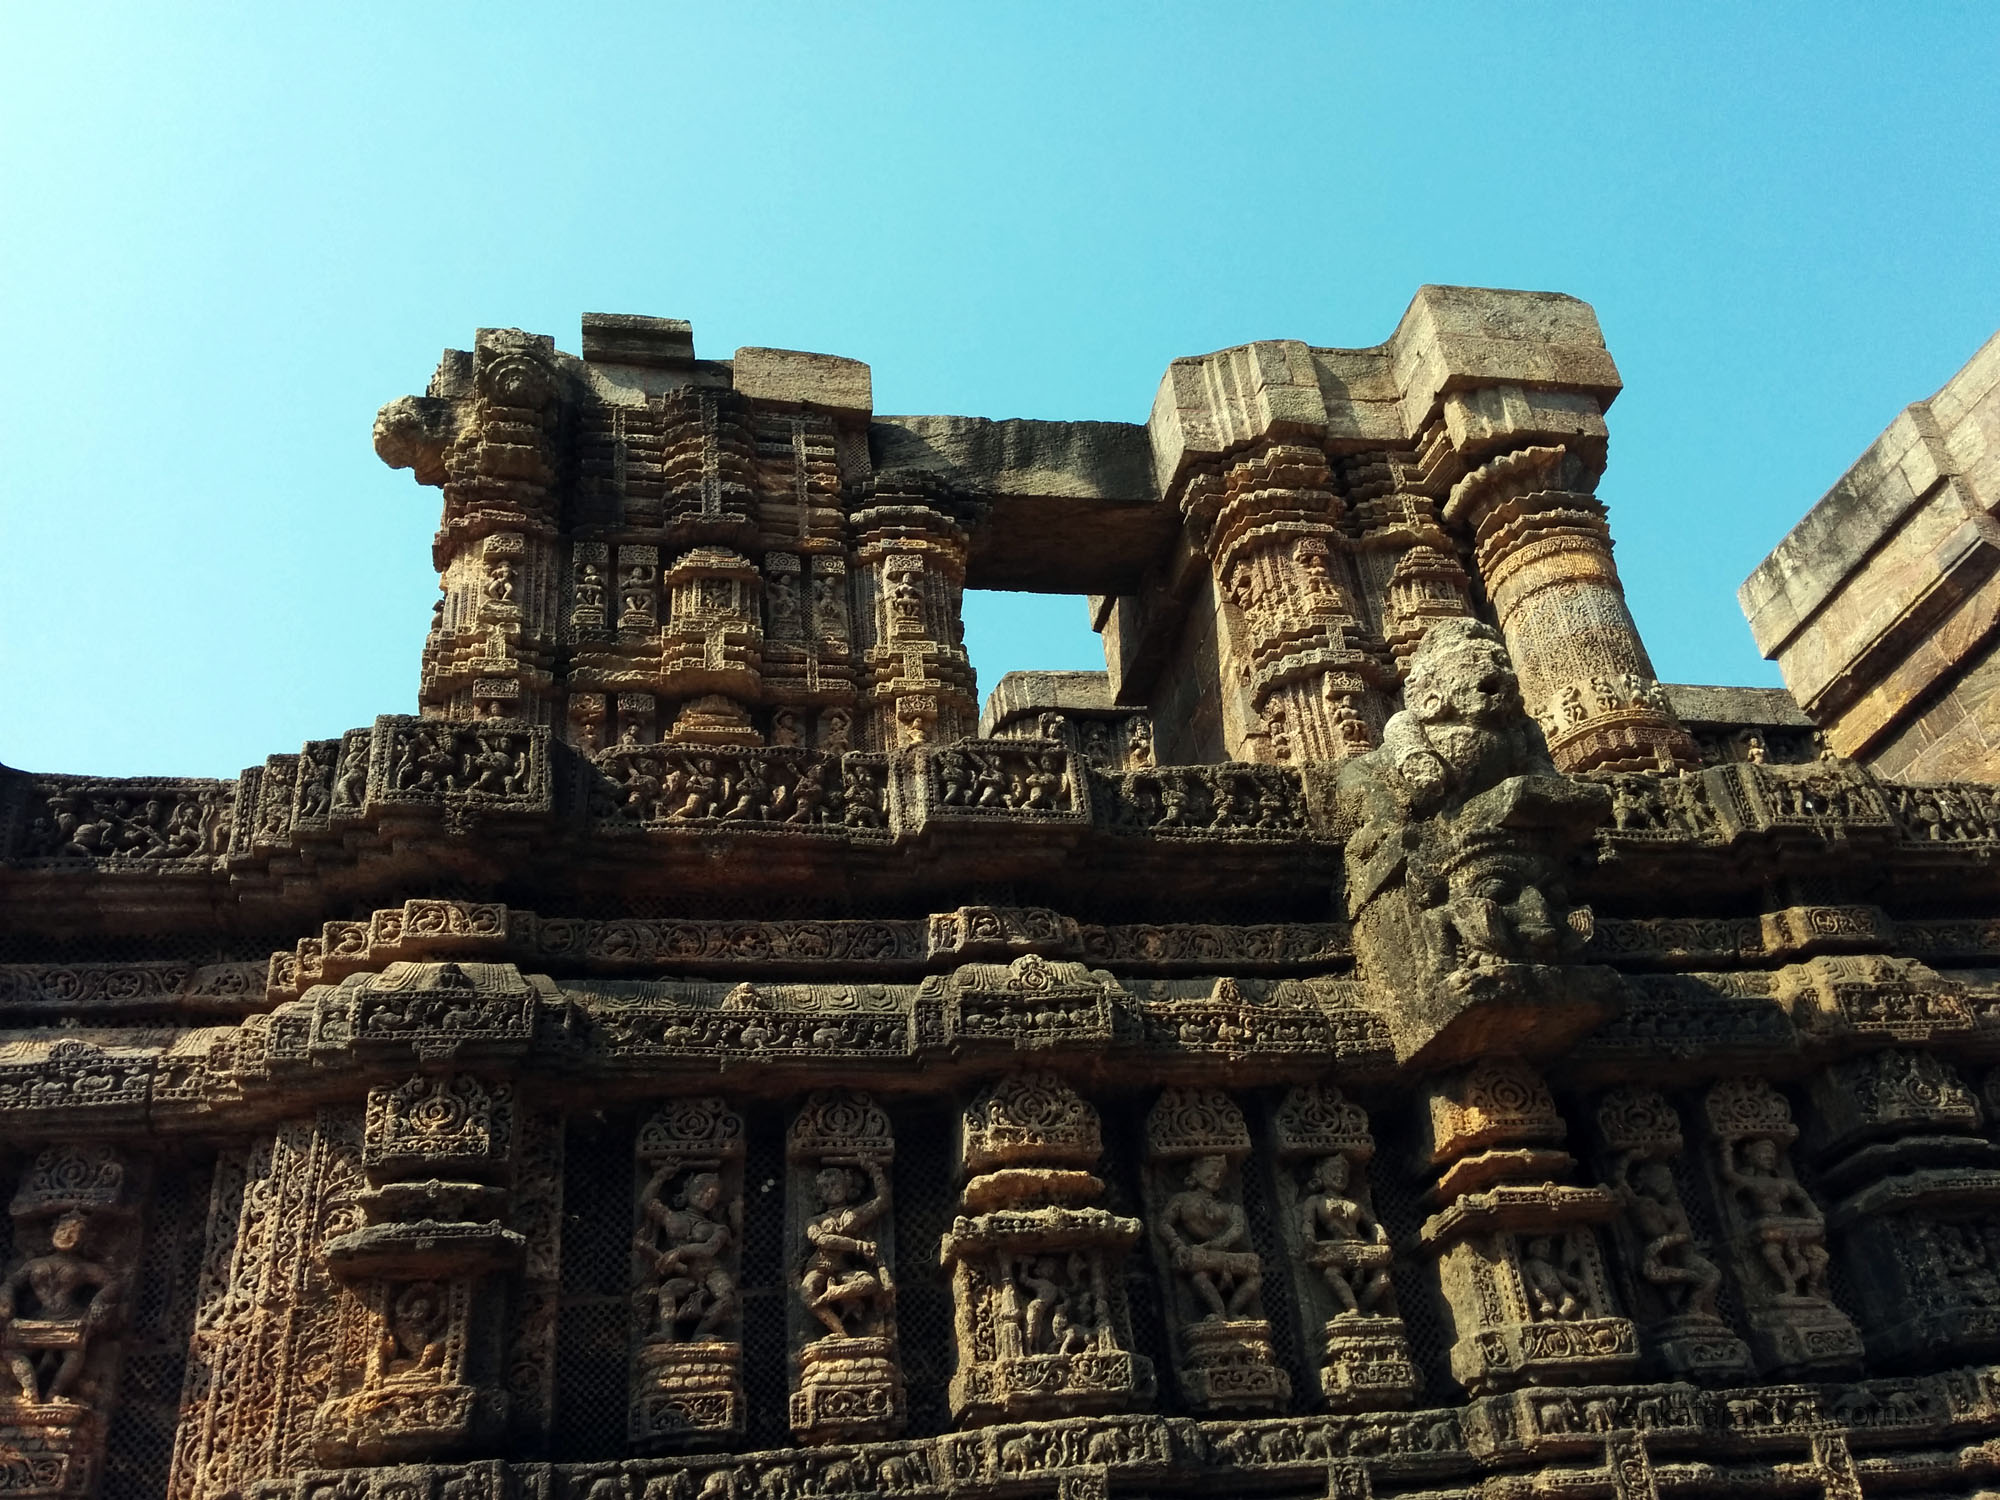 Konark Sun Temple - layers of carvings